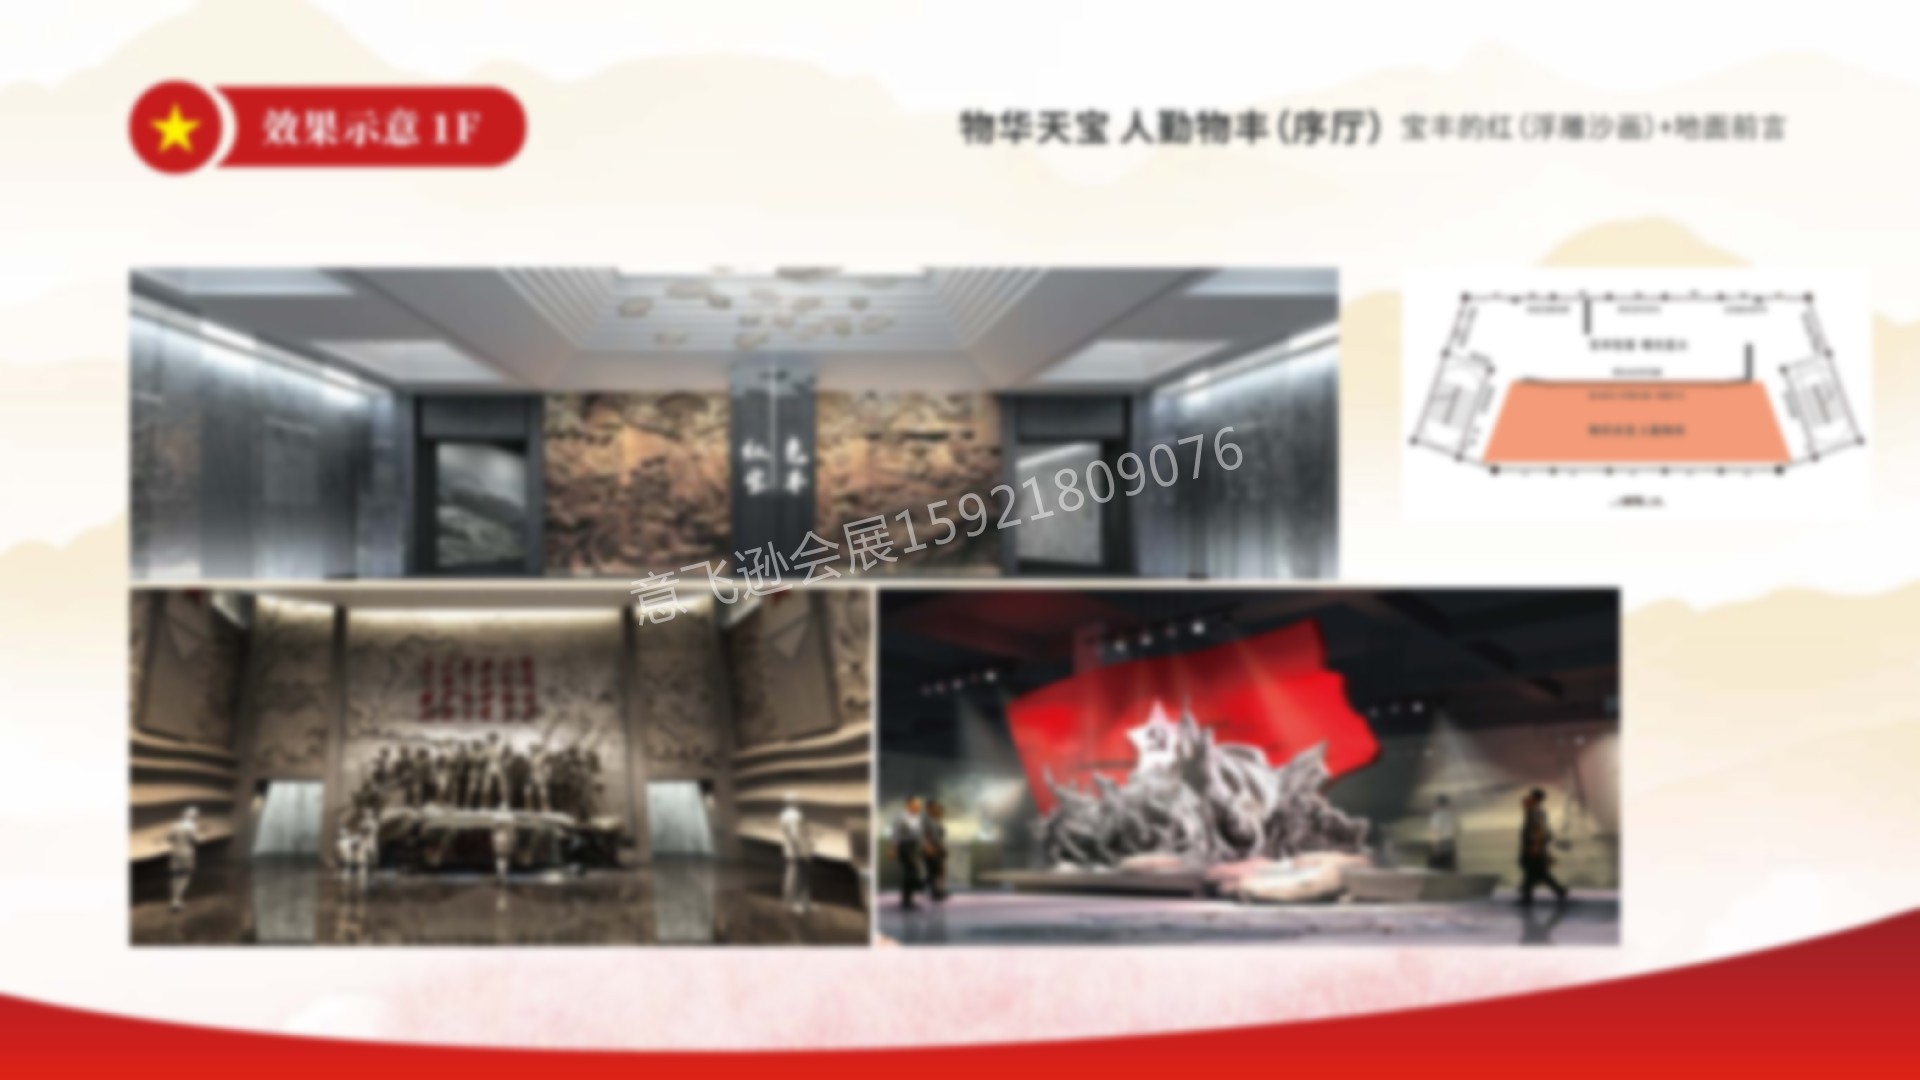 上海意飞逊-宝丰红色记忆展览馆-20210331(1)_页面_19 拷贝.jpg